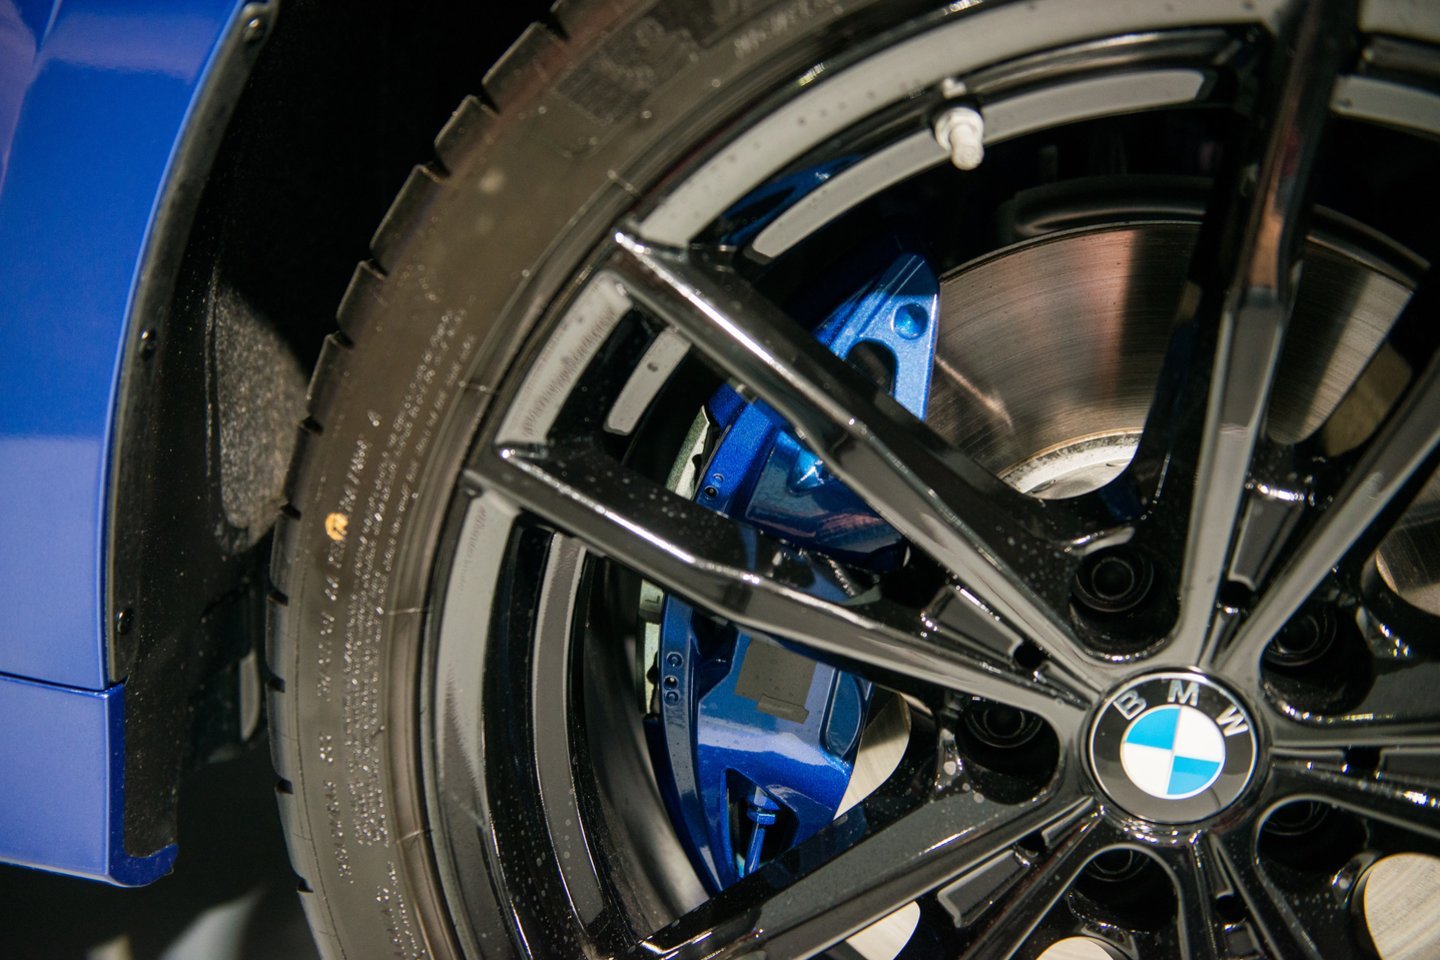 Vokietijos automobilių gamintojos BMW („Bayerische Motoren Werke“) pasauliniai automobilių pardavimai trečiąjį ketvirtį susitraukė dėl puslaidininkių stygiaus.<br>J.Stacevičiaus nuotr.